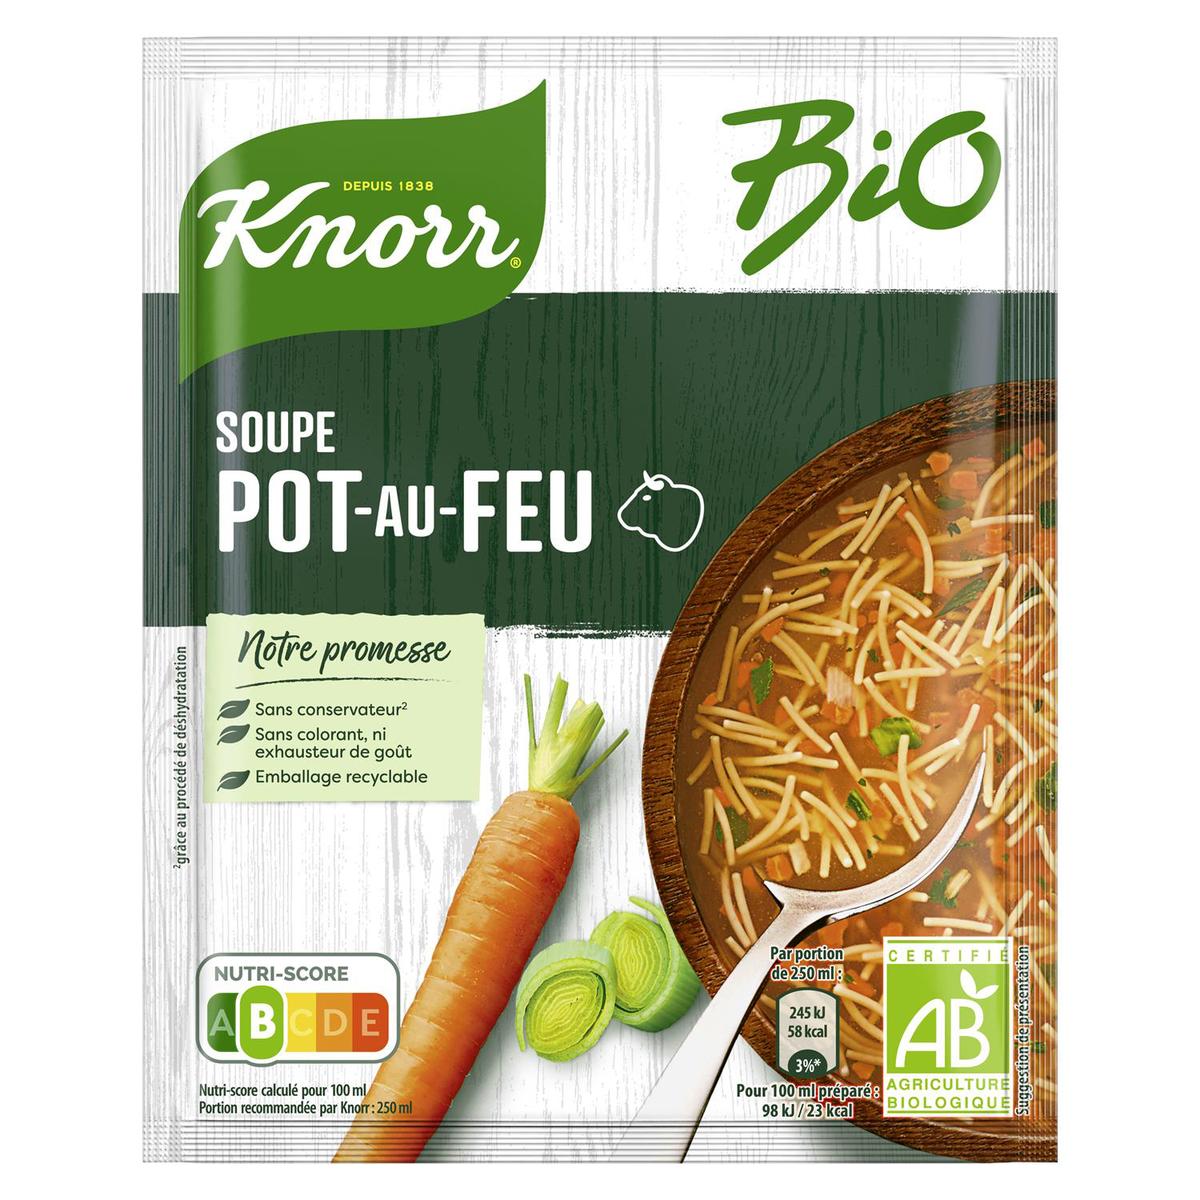 Soupe déshydratée au pistou à l'huile d'olive Knorr - 80g